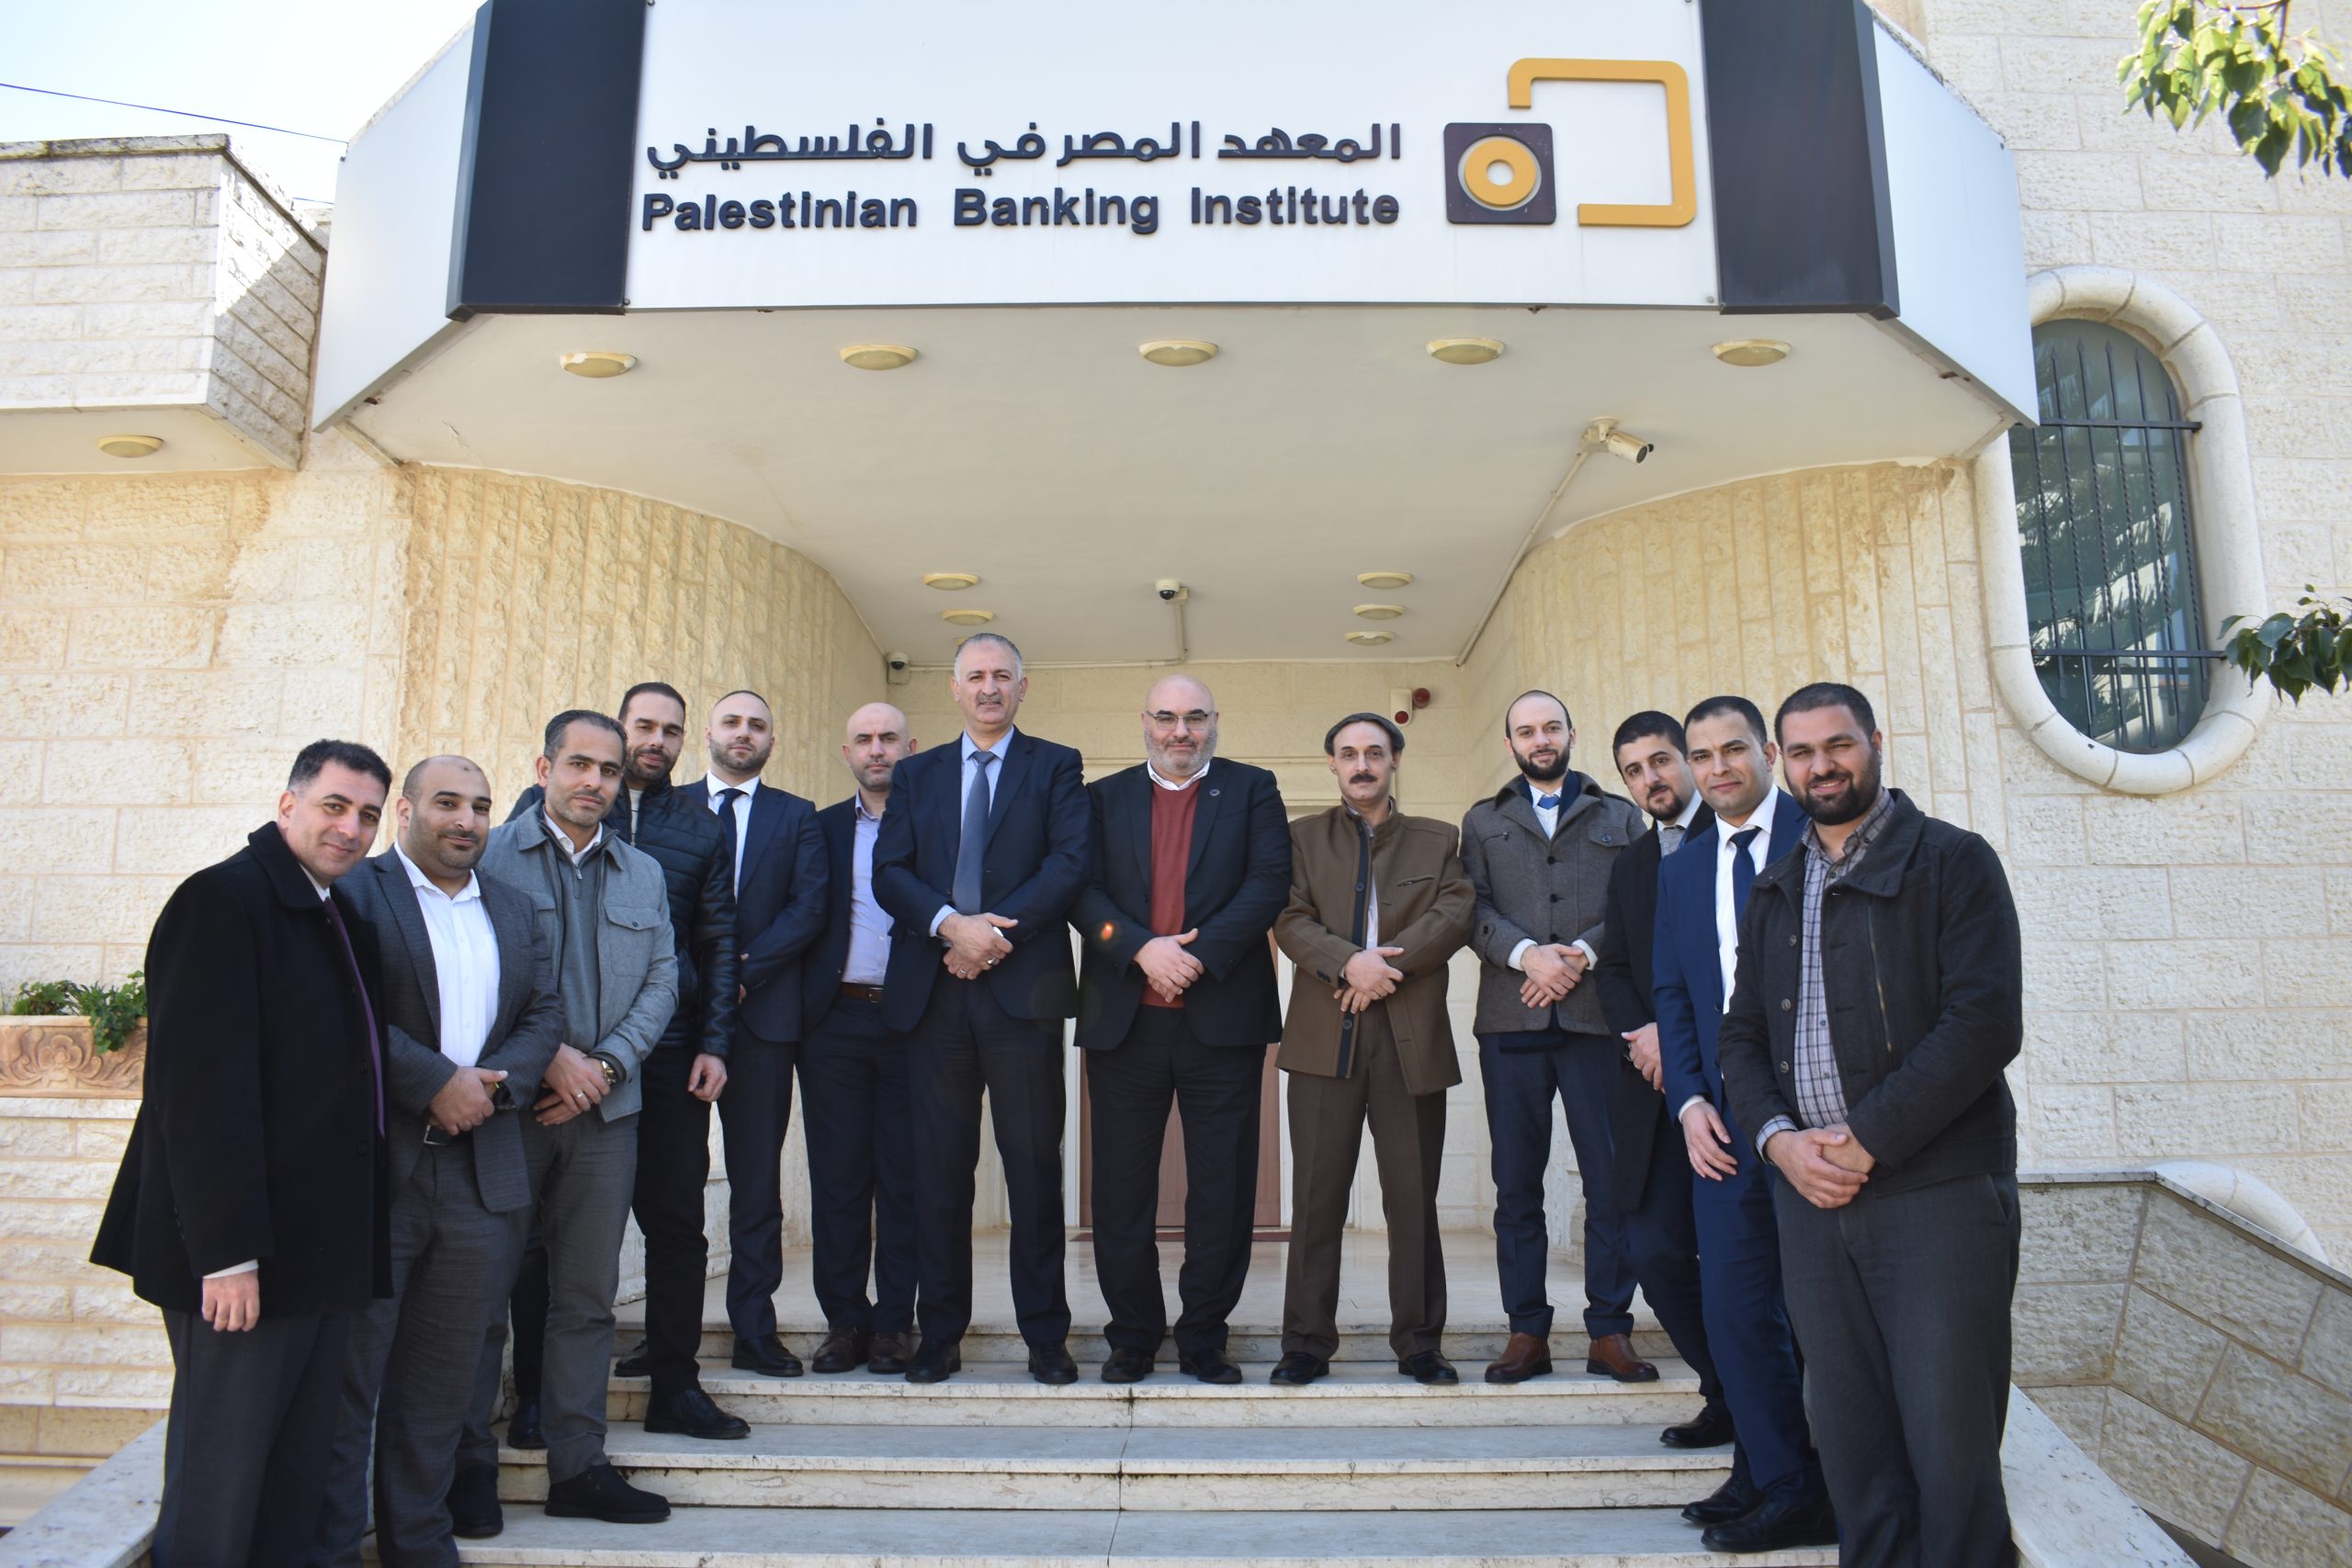 المعهد المصرفي الفلسطيني يعقد إجتماعاً لمسؤولي تكنولوجيا المعلومات في القطاع المصرف